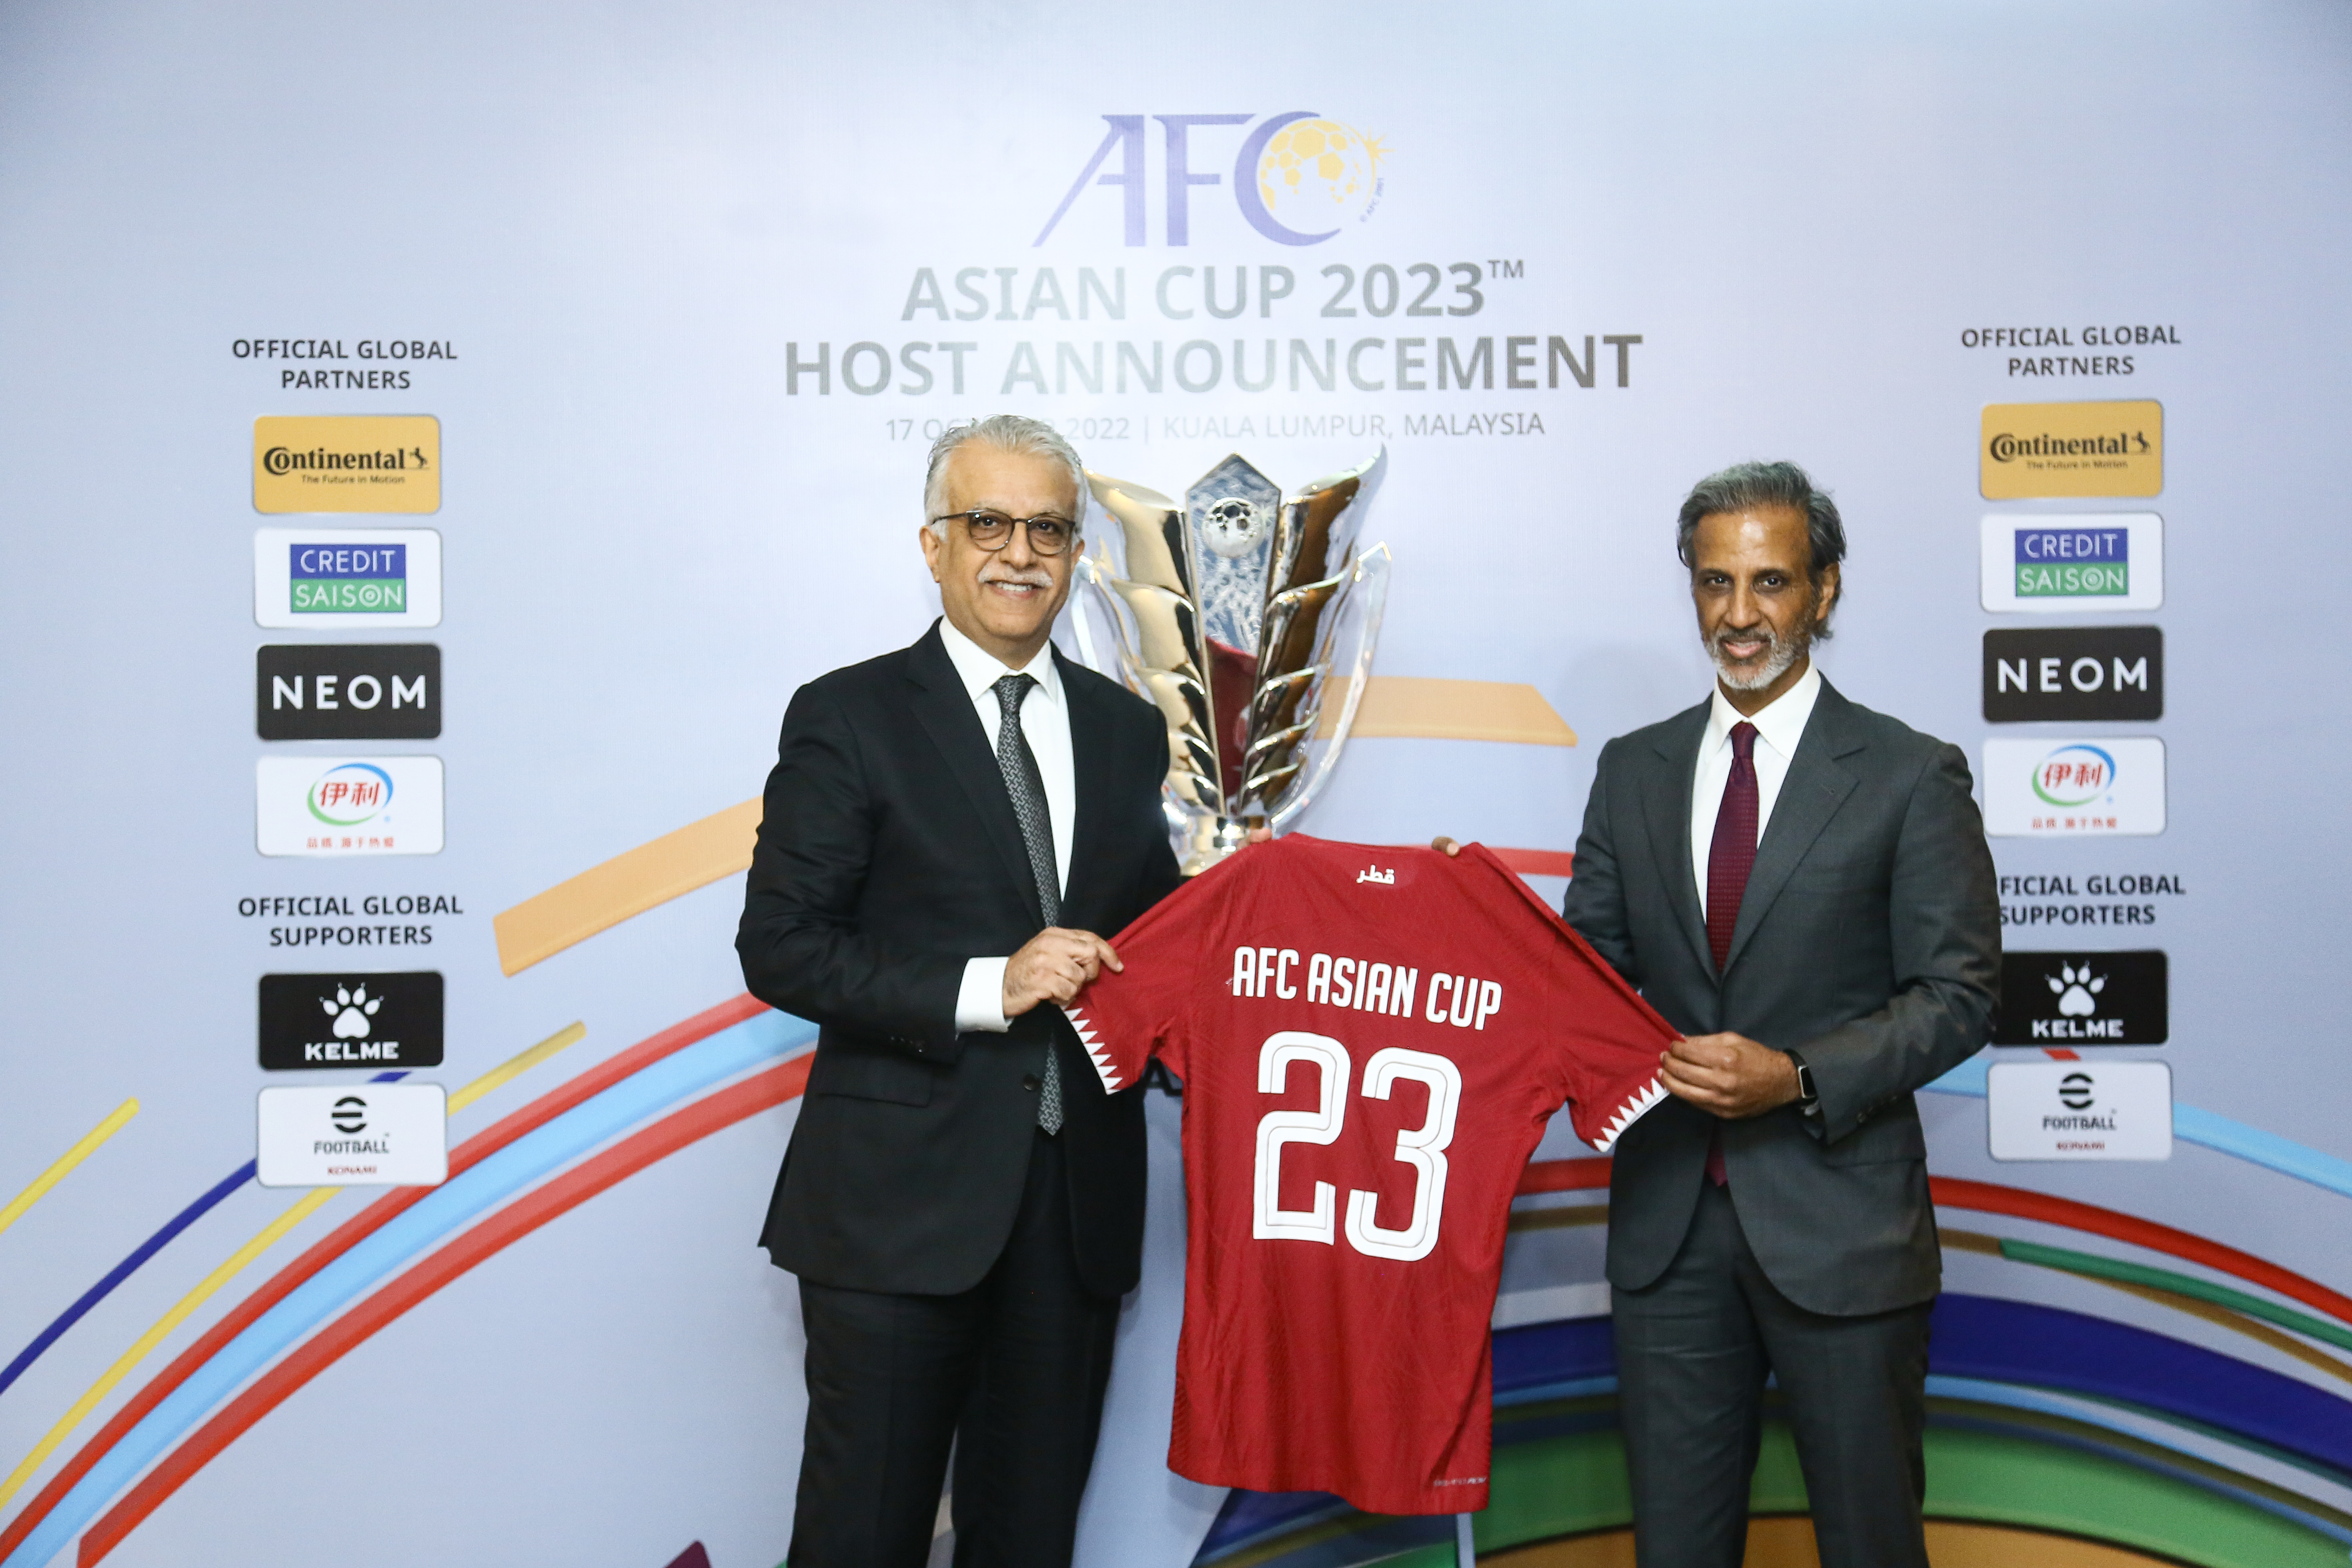 سبورتس ديجيتال توسع صفقة بث الاتحاد الآسيوي لكرة القدم لتغطية نهائيات كأس آسيا 2023 في قطر